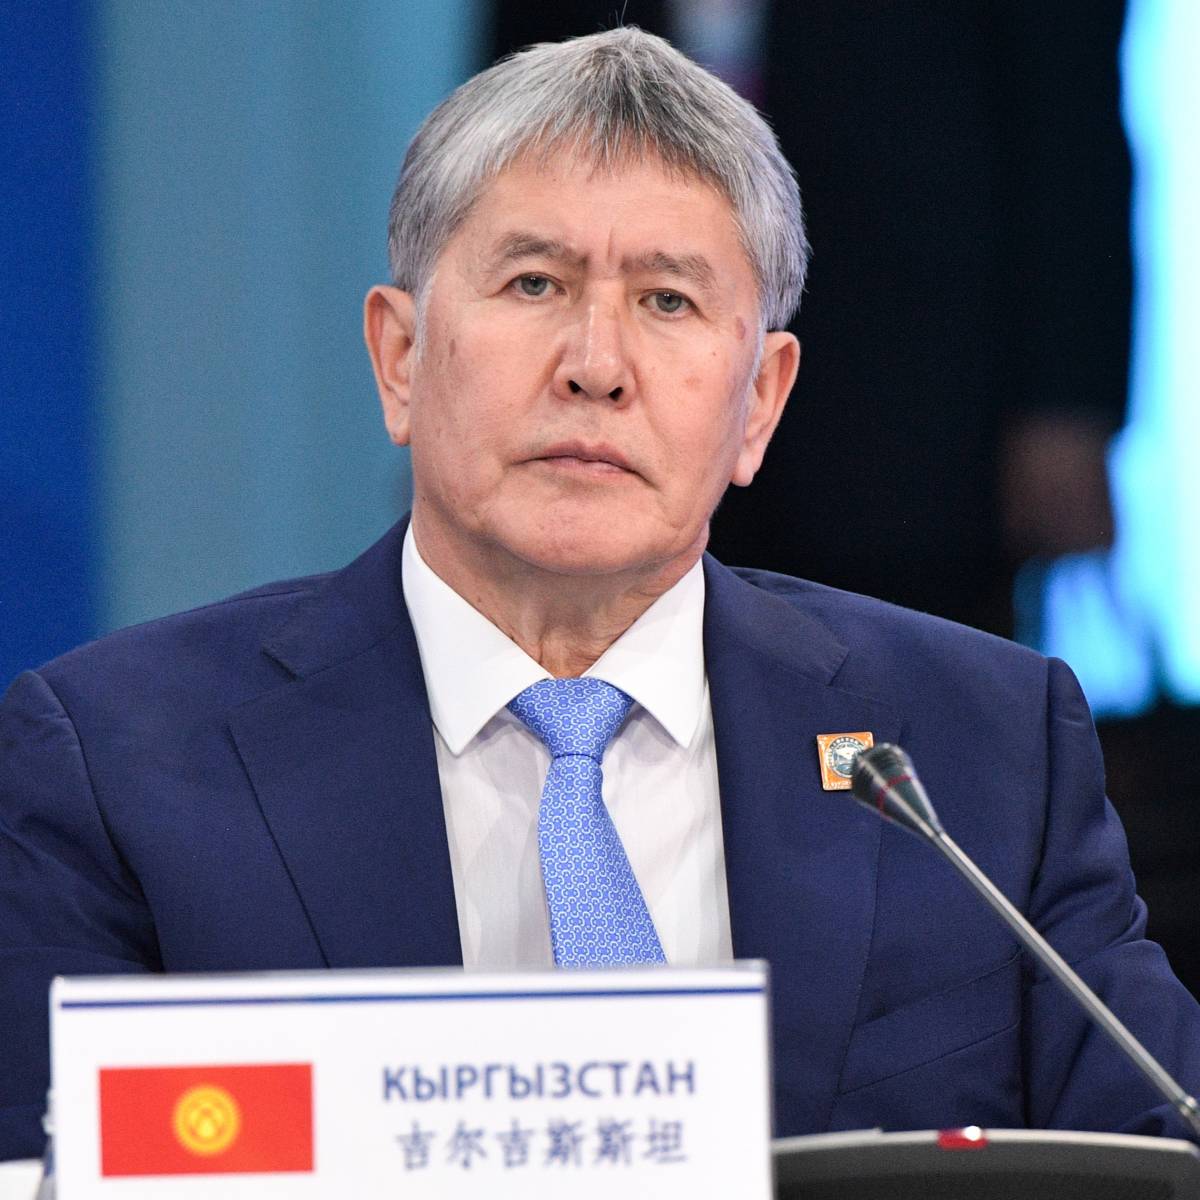 Экс-президент Киргизии Атамбаев стрелял по спецназовцам во время штурма